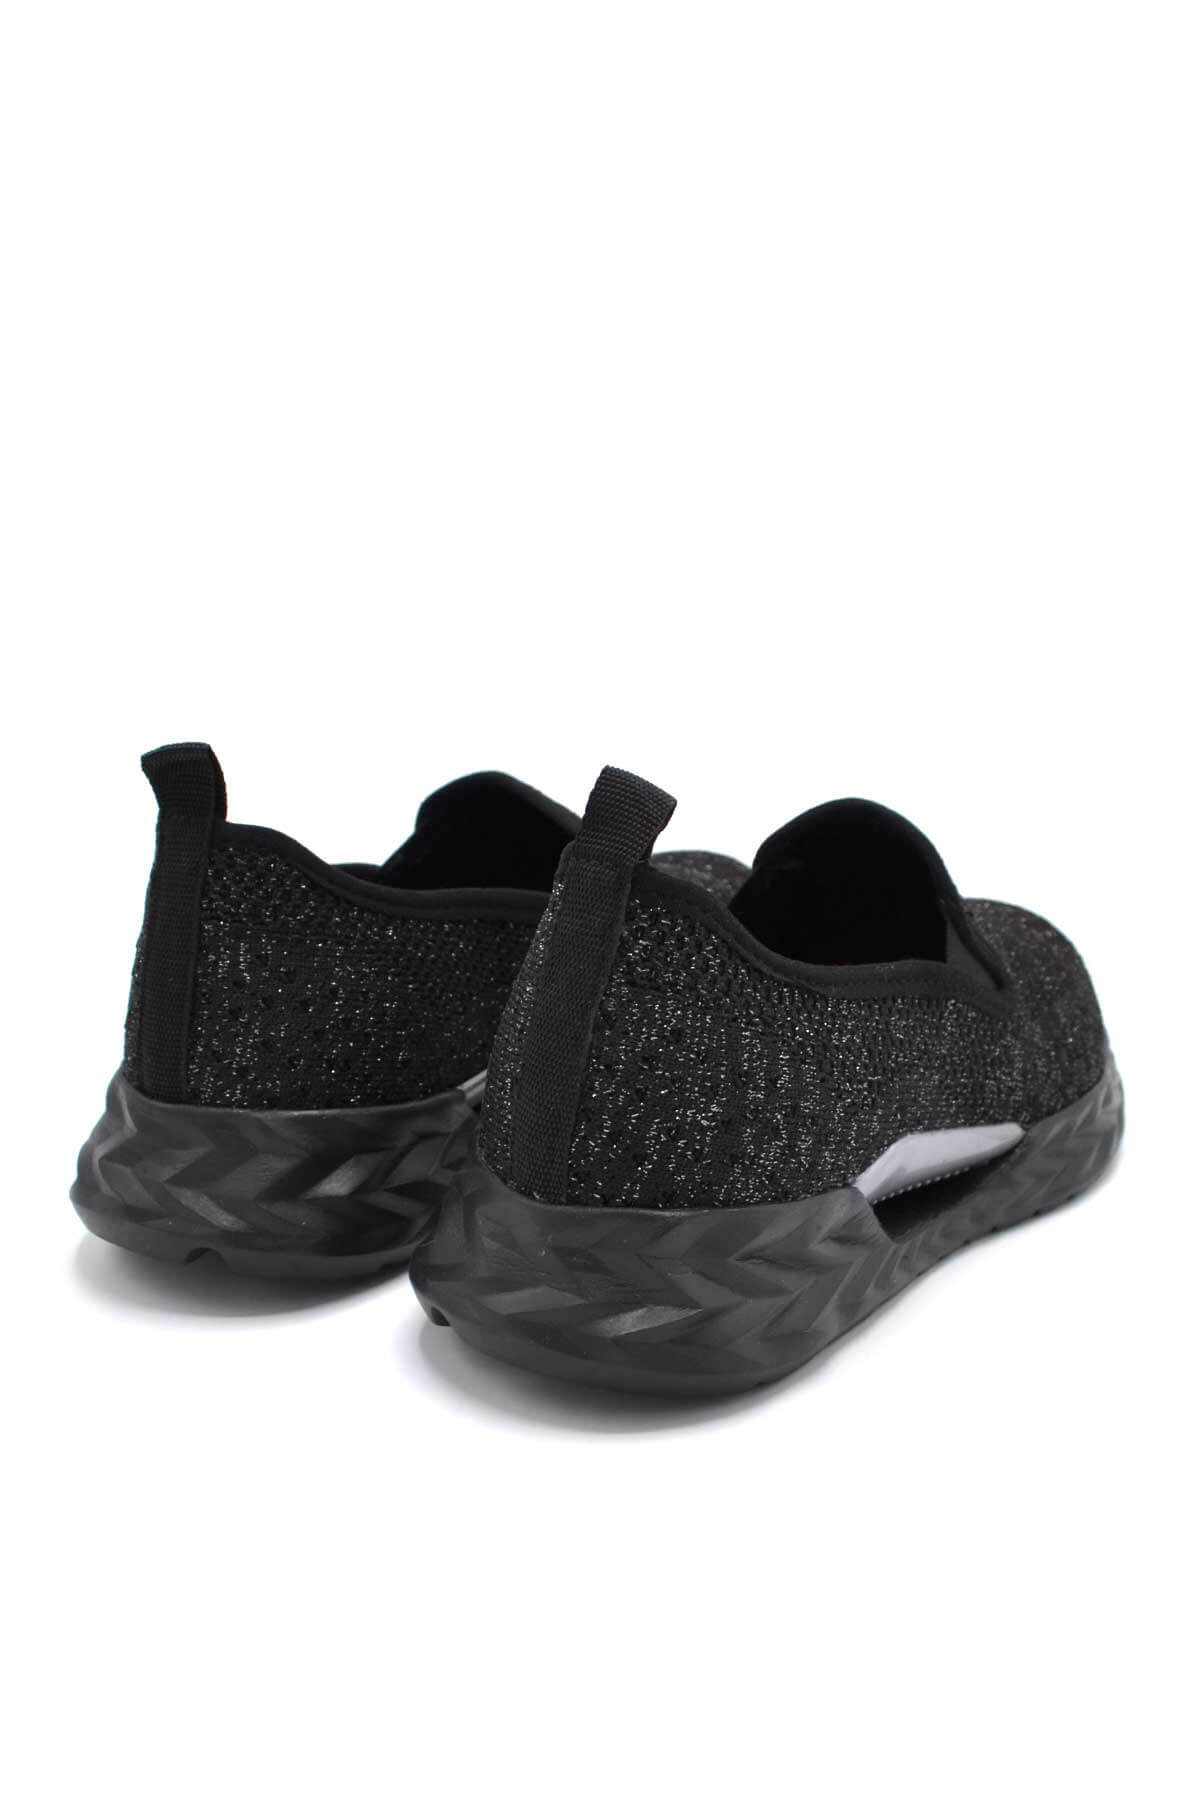 Kadın Spor Ayakkabı Siyah 2217803Y - Thumbnail